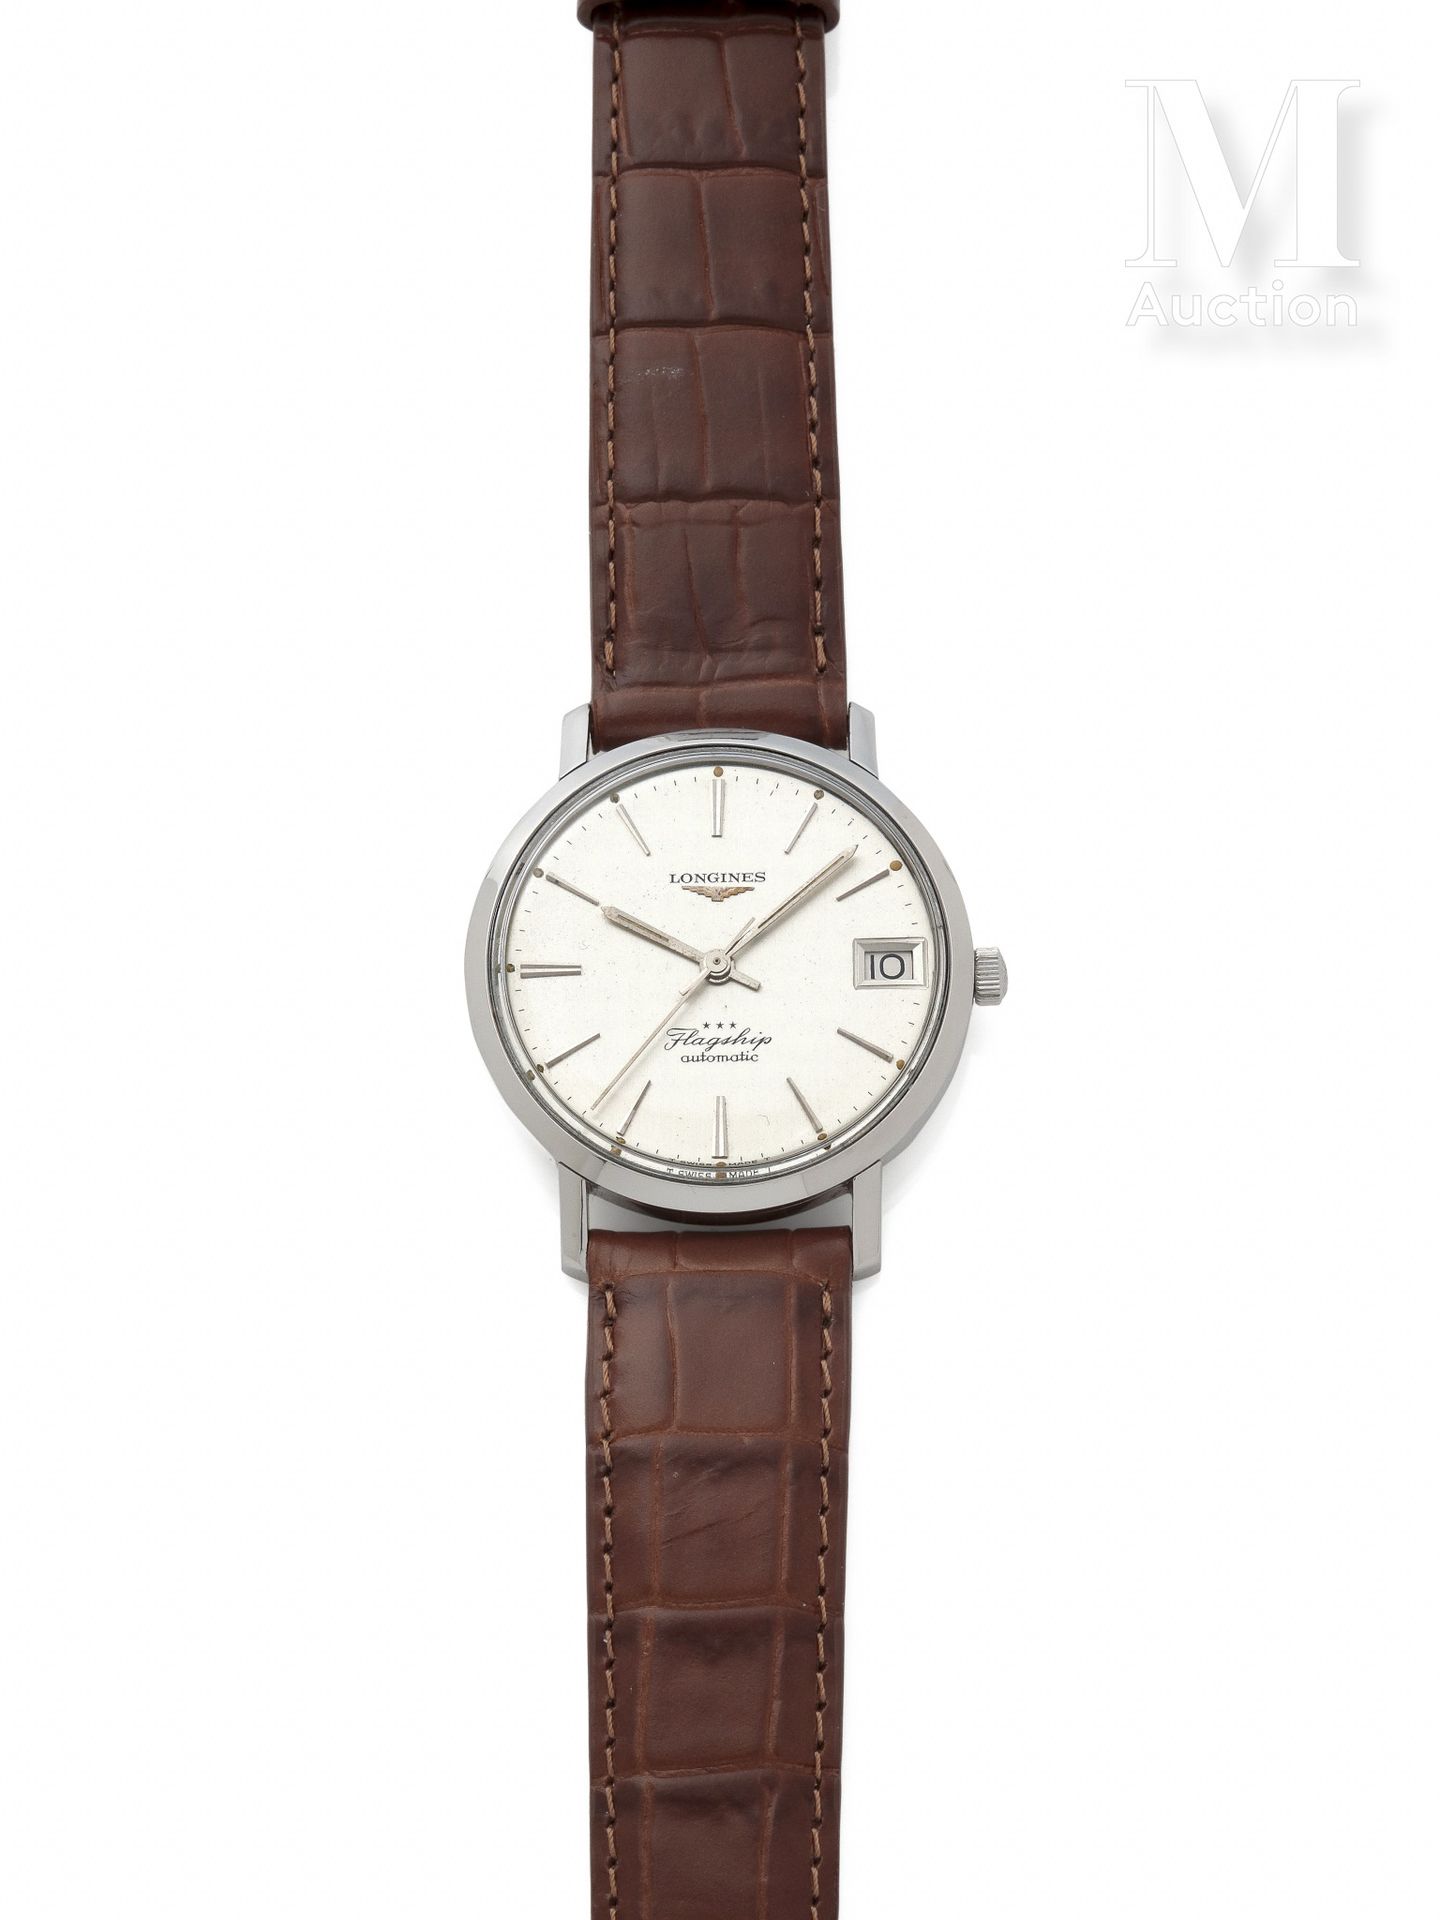 LONGINES 旗舰店

目录编号: 3118

约1970年

钢制圆形男士手表。

银色表盘上有指挥棒标记，日期位于3点钟方向。中心秒针。有机玻璃的玻璃。&hellip;